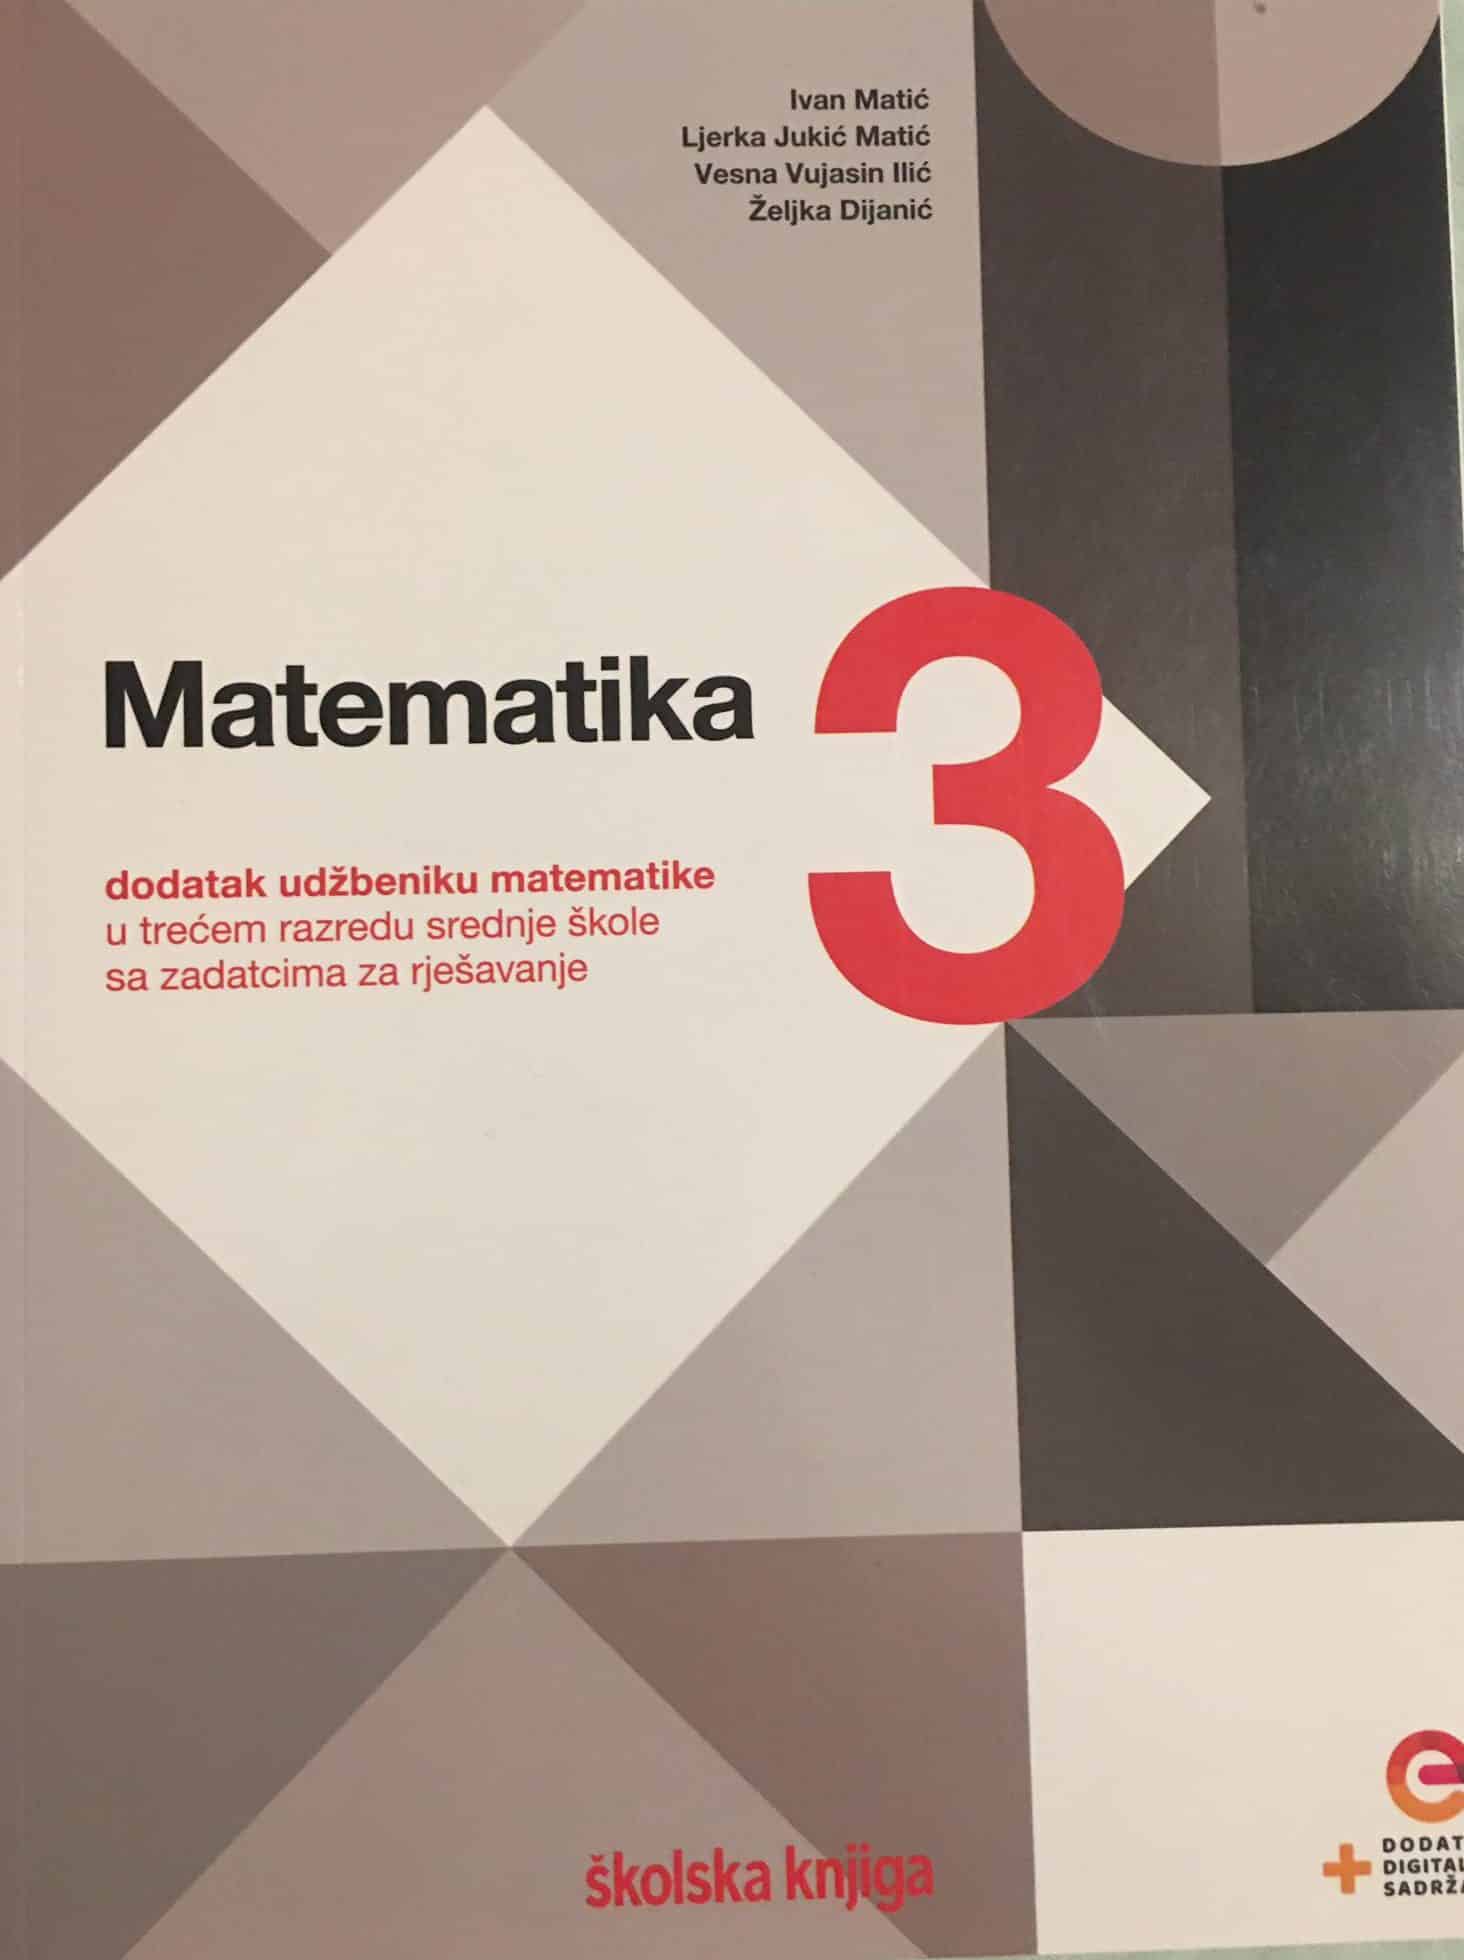 MATEMATIKA 3: dodatak udžbeniku matematike u trećem razredu srednje škole sa zadatcima za rješavanje autora Ivan Matić, Ljerka Jukić Matić, Vesna Vujasin Ilić, Željka Dijanić